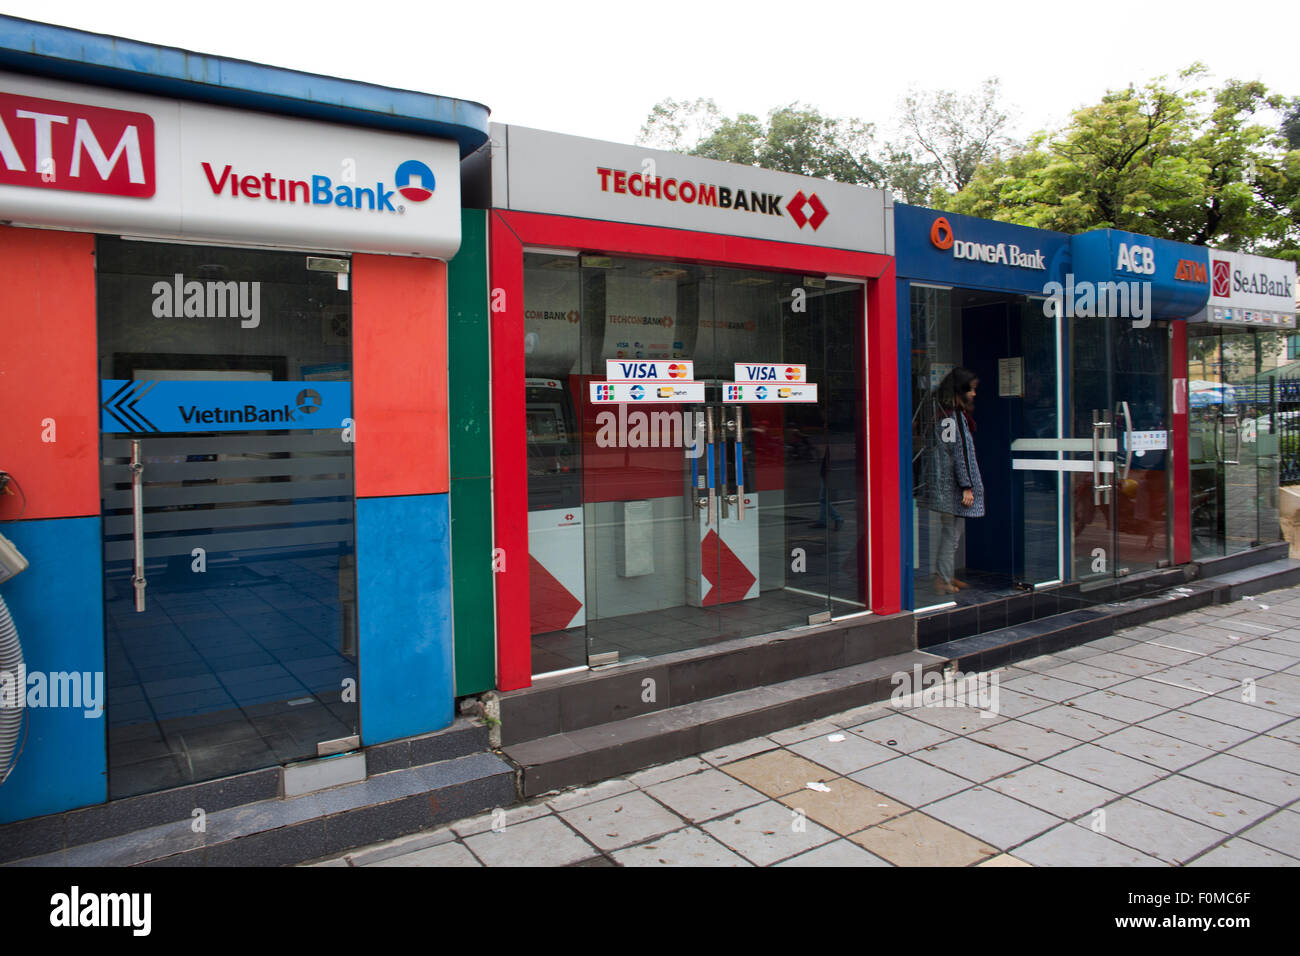 ATM at in Hanoi Stock Photo